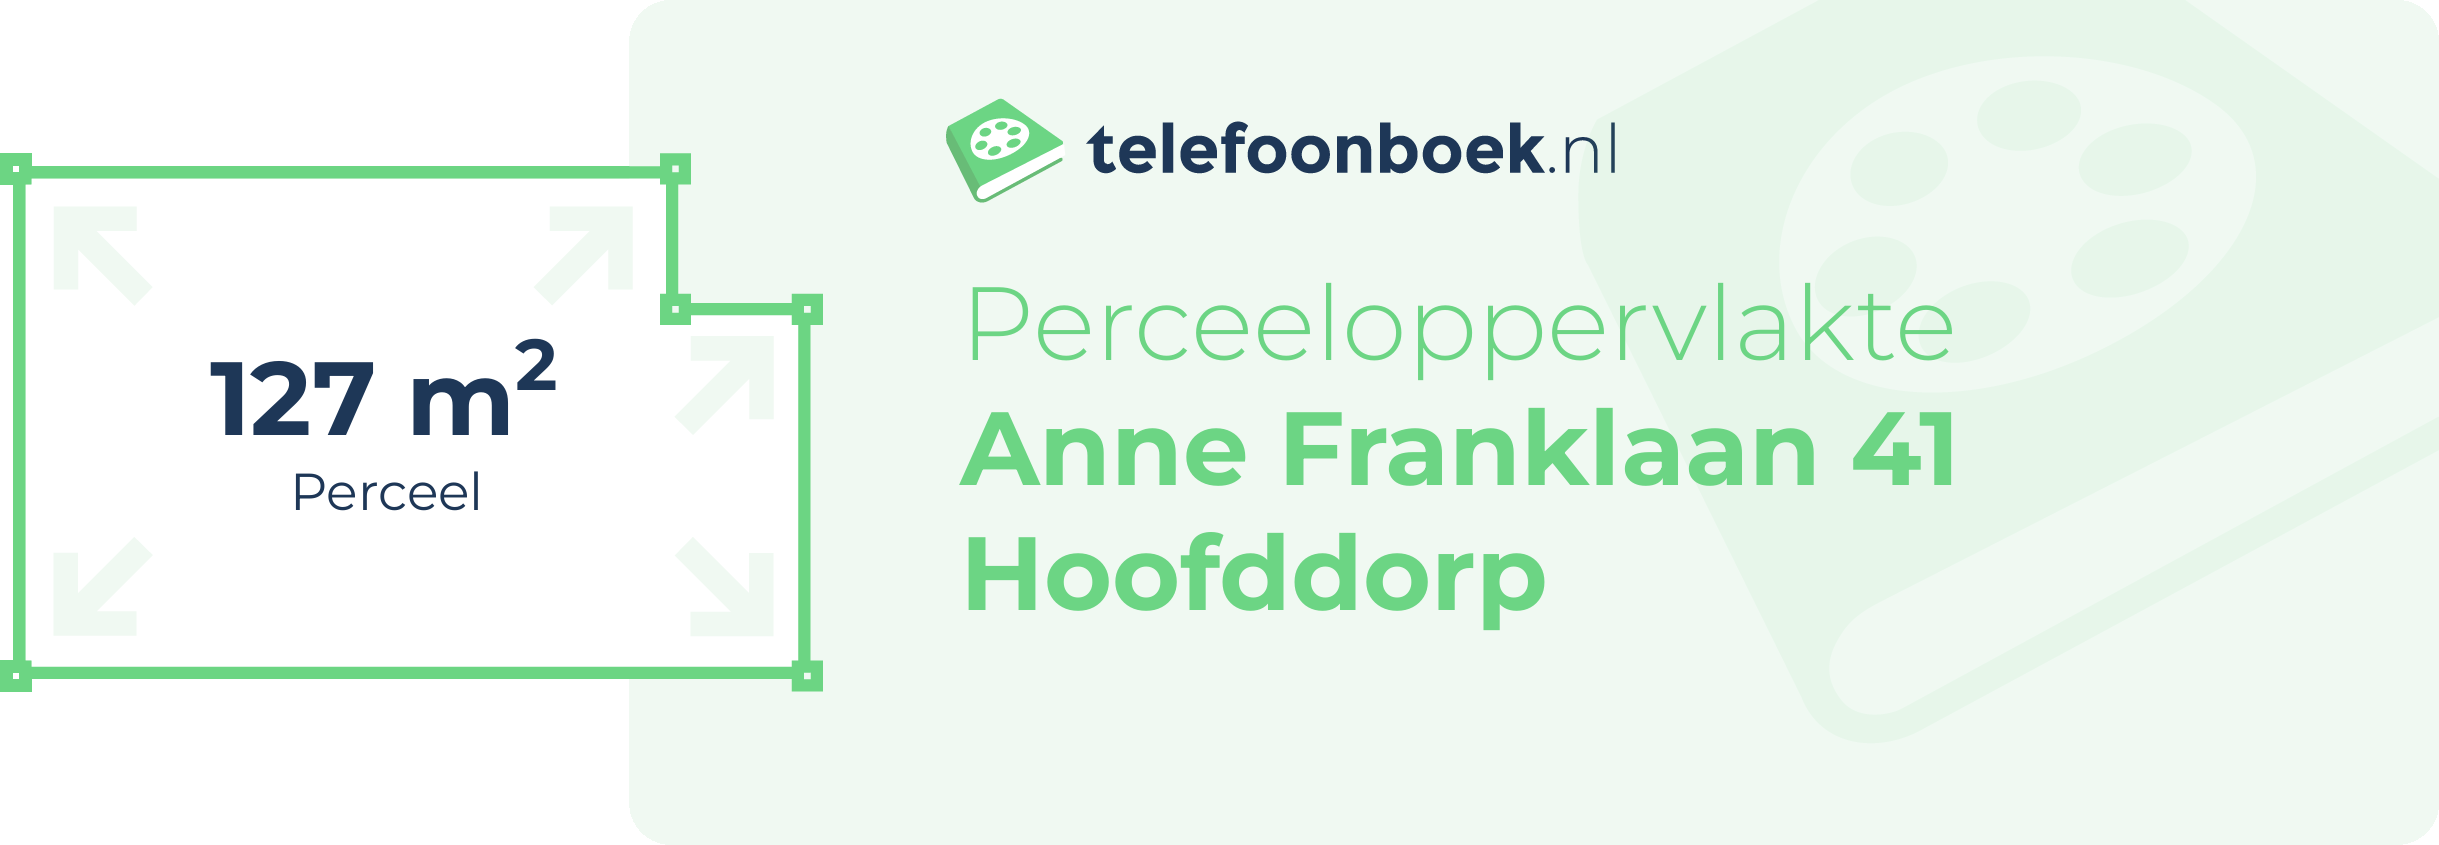 Perceeloppervlakte Anne Franklaan 41 Hoofddorp